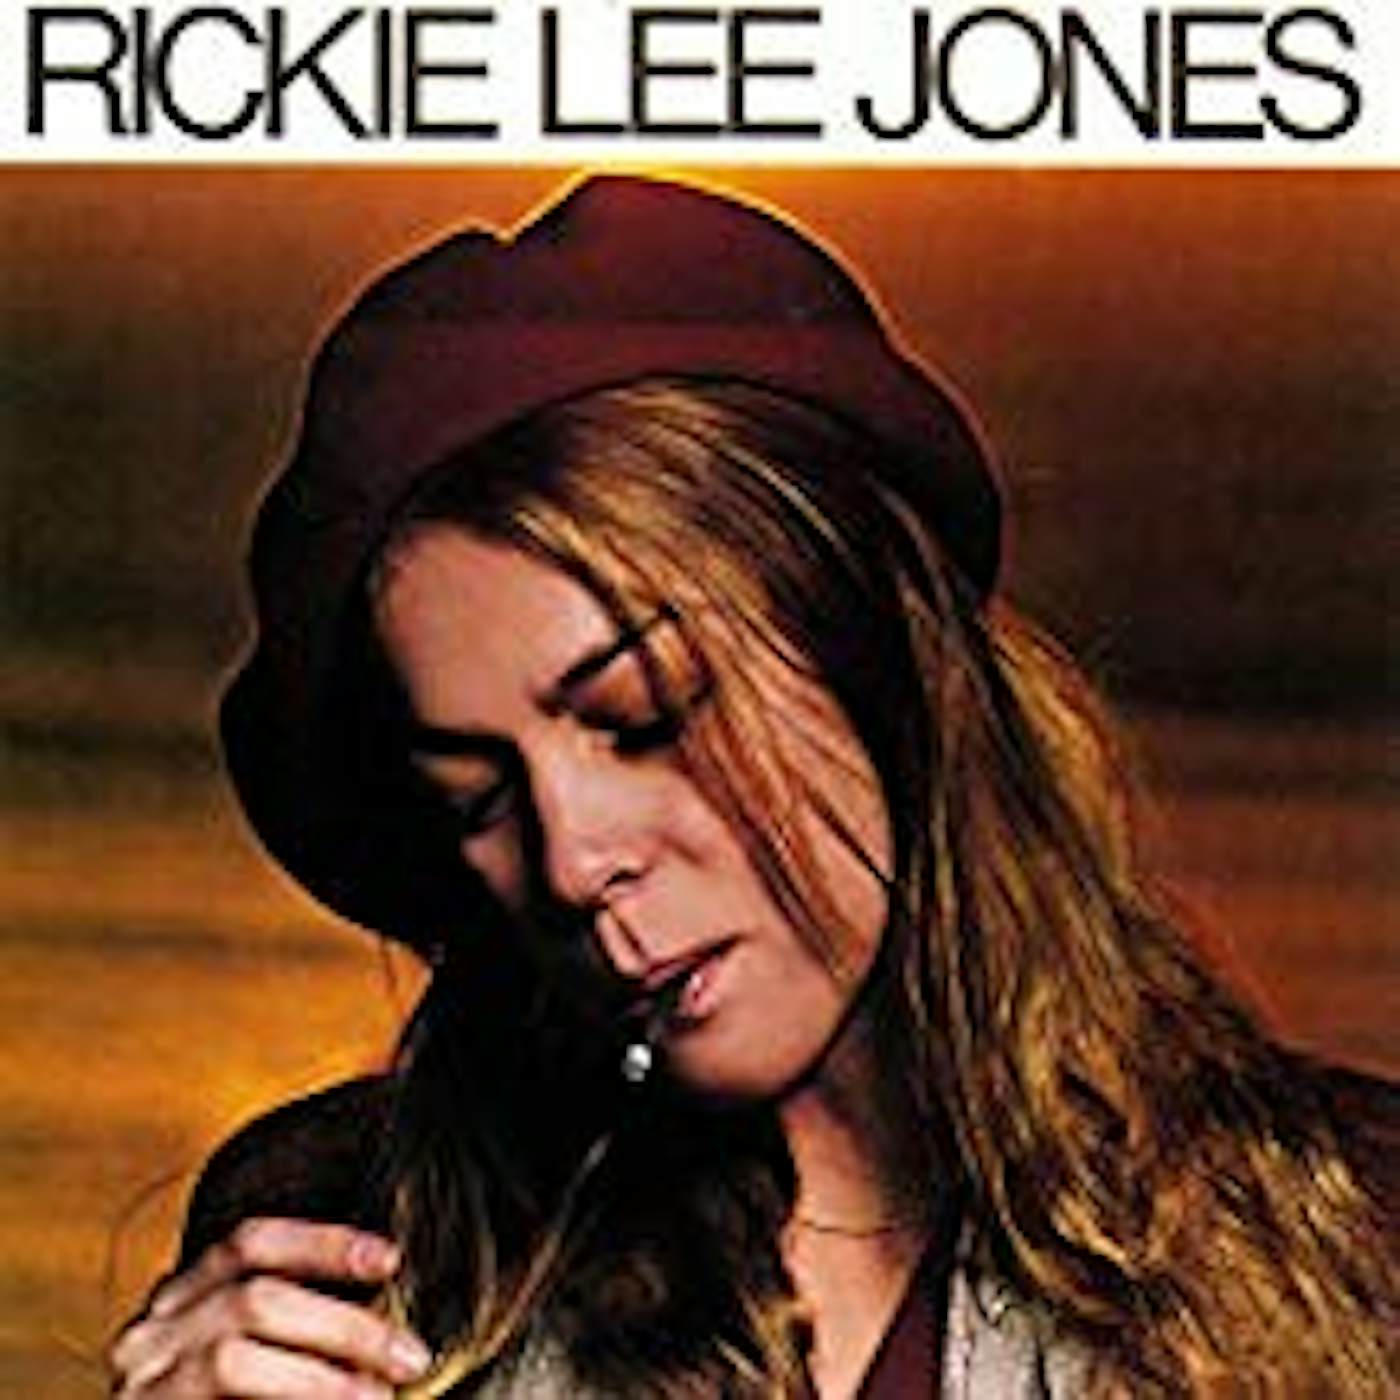 Rickie Lee Jones Vinyl Record